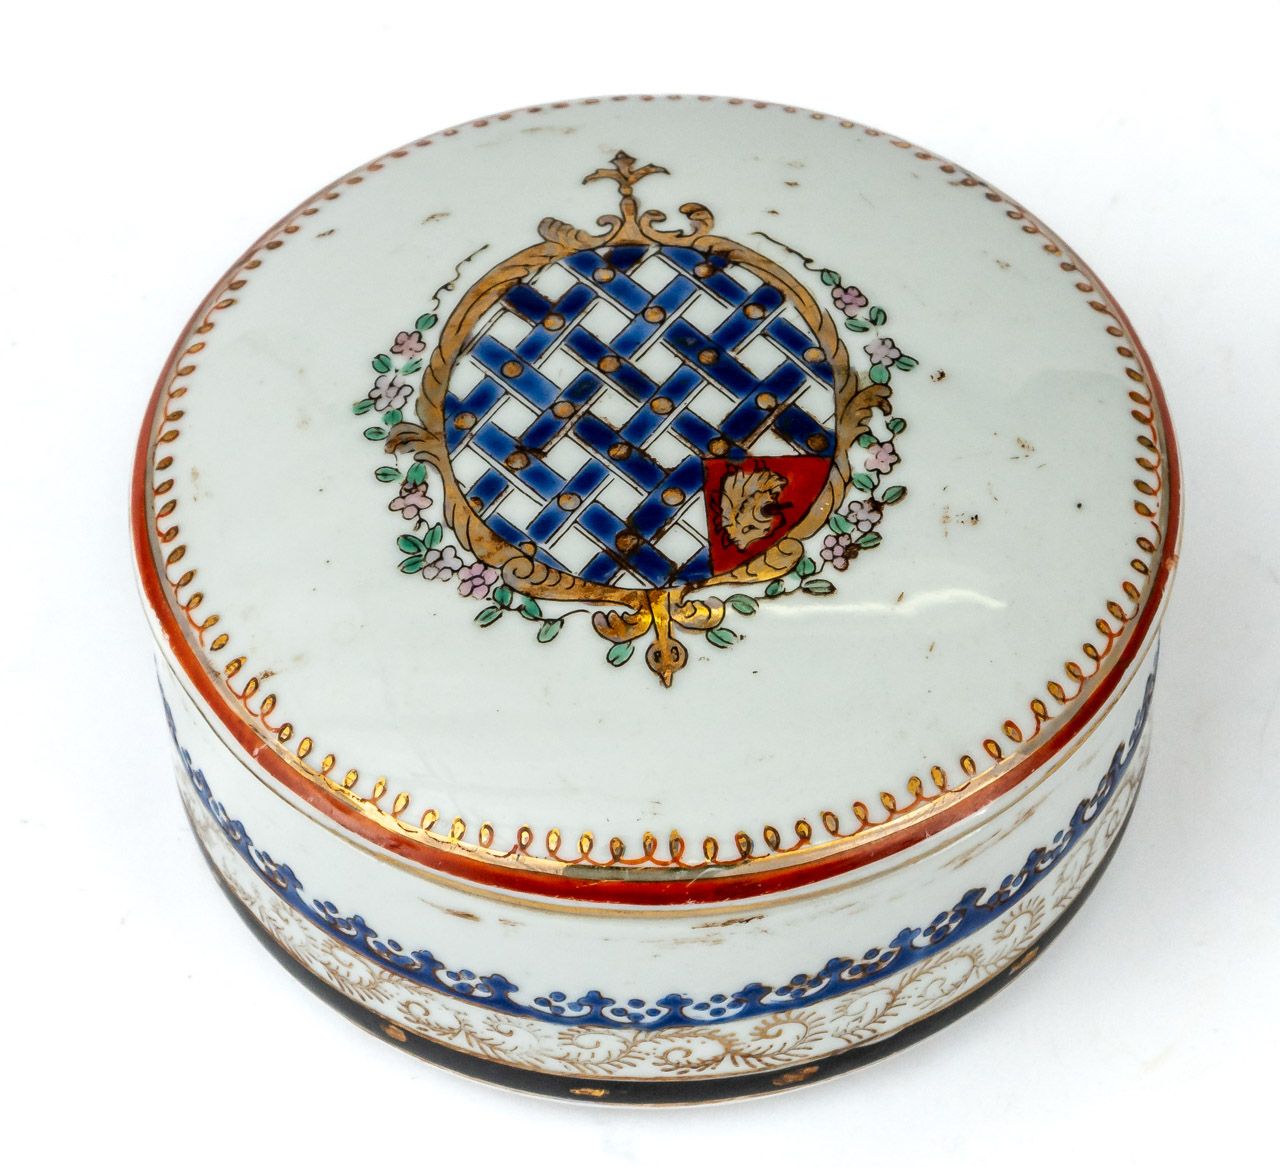 DECKELDOSE China, porcelana de exportación, siglo XVIII/XIX.

Diámetro: 12 cm, a&hellip;